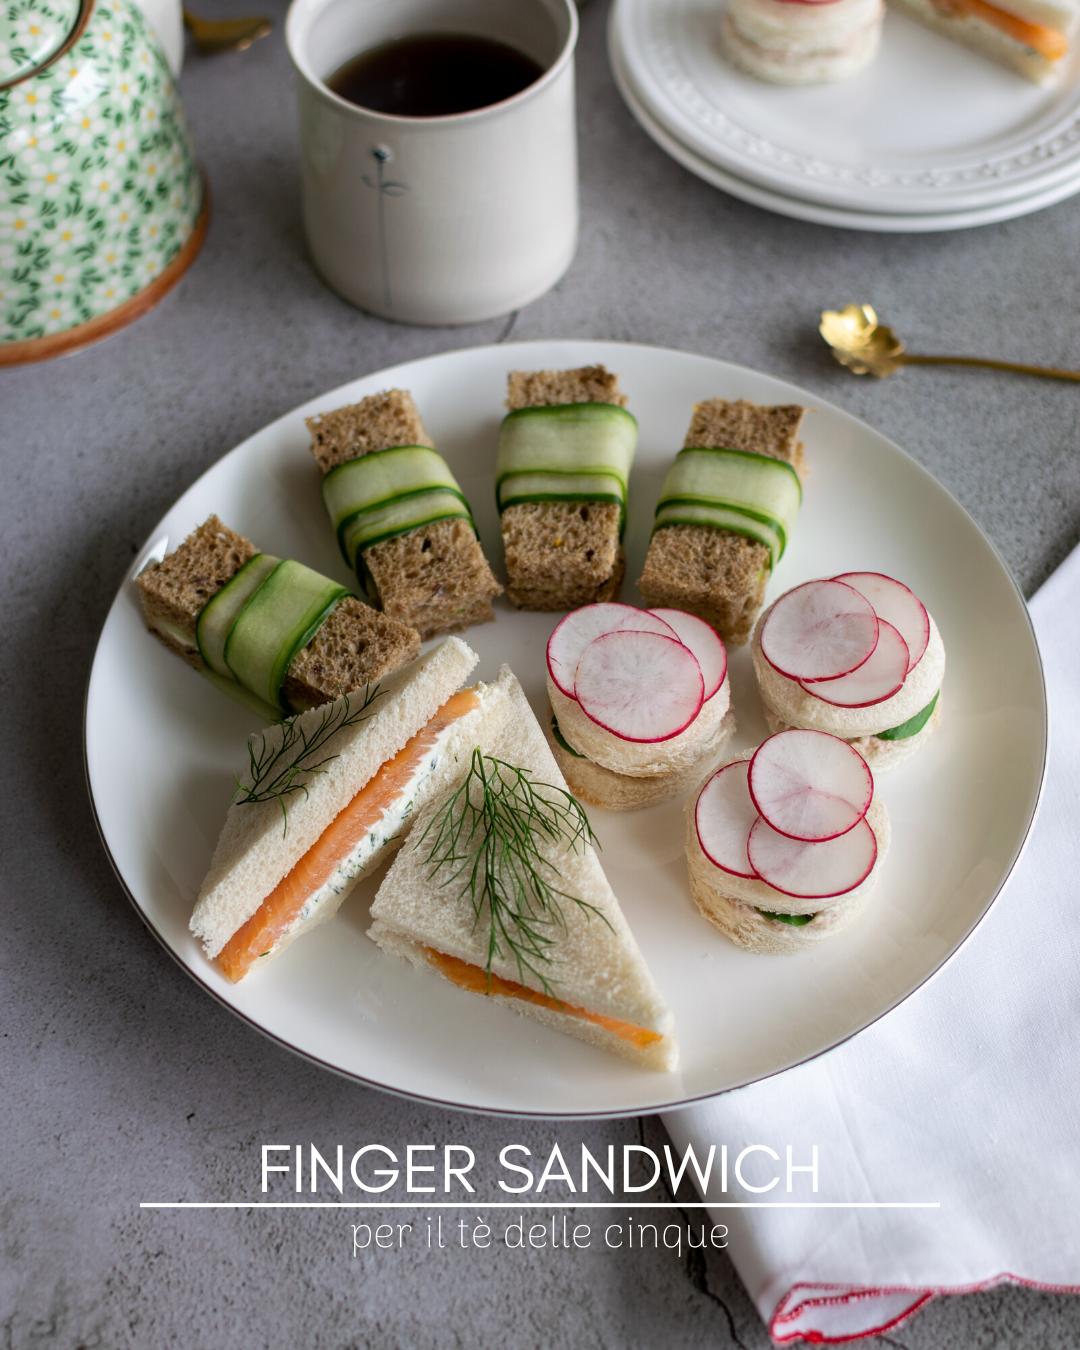 Finger sandwich al cetriolo per l'afternoon tea inglese o tè delle cinque